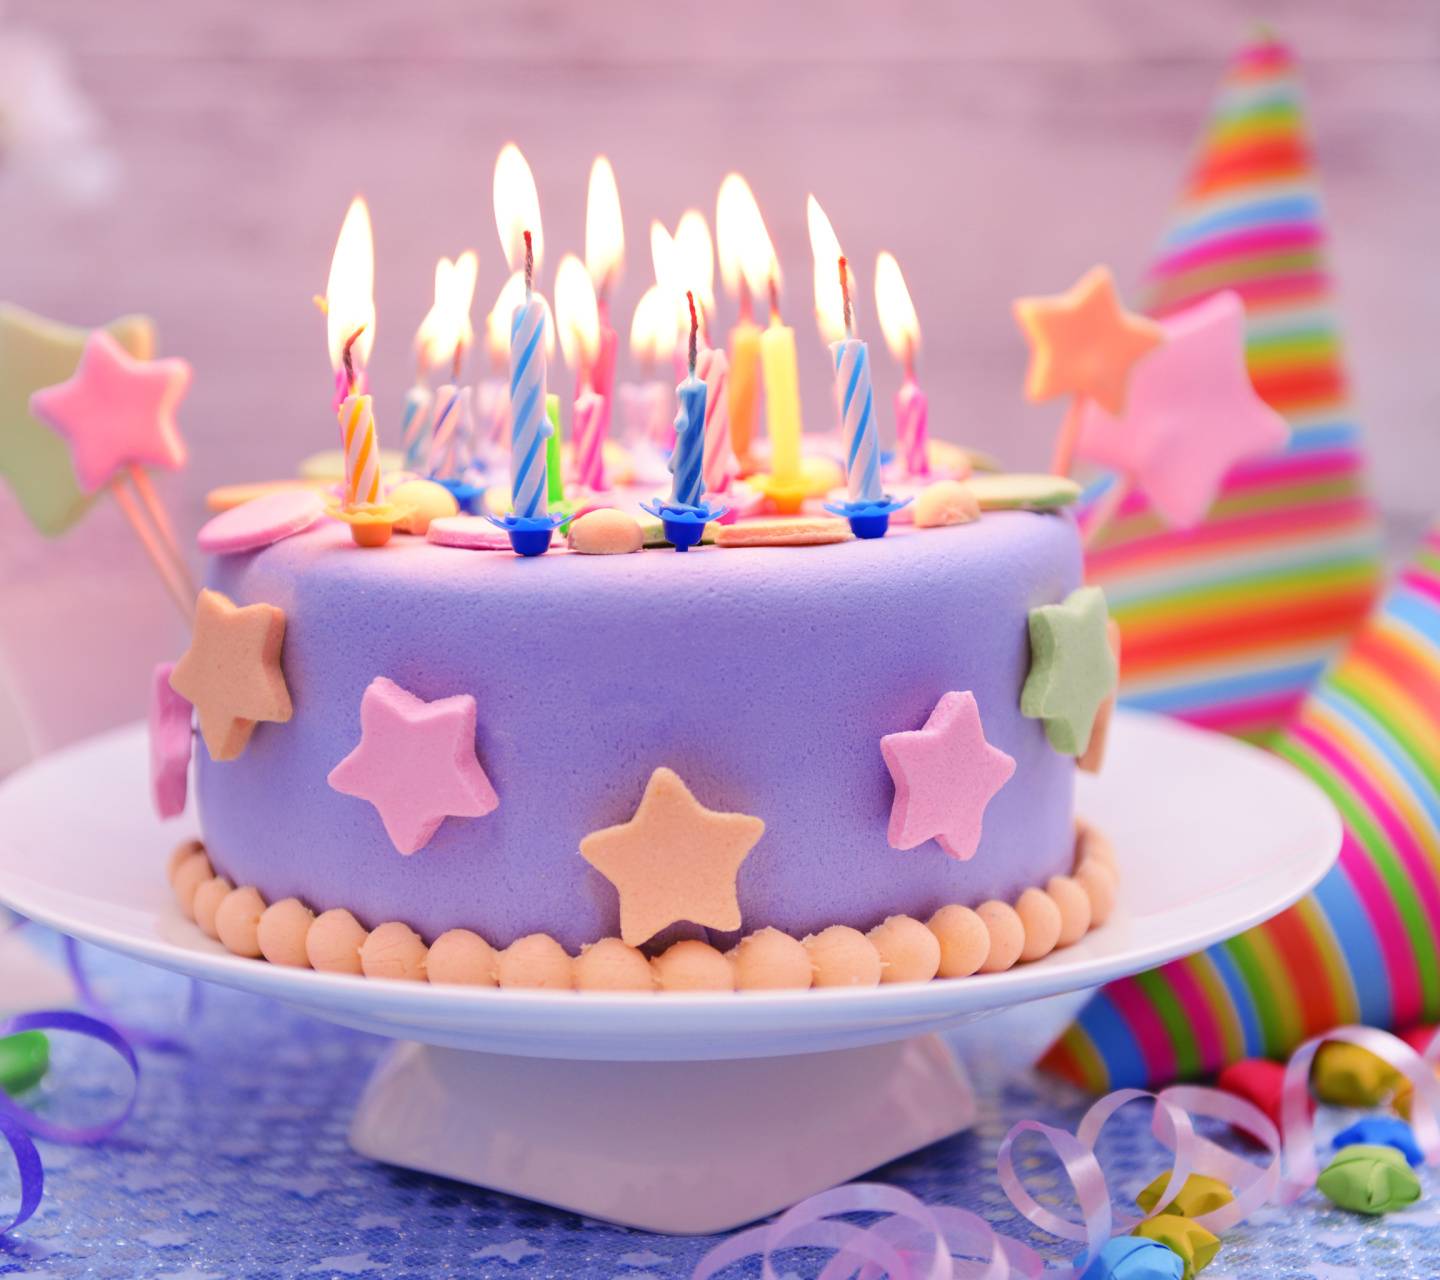 Top 10 : Special Unique Happy Birthday Cake HD Pics Images for Him | Happy  birthday cakes, Happy birthday cake images, Happy birthday cake pictures